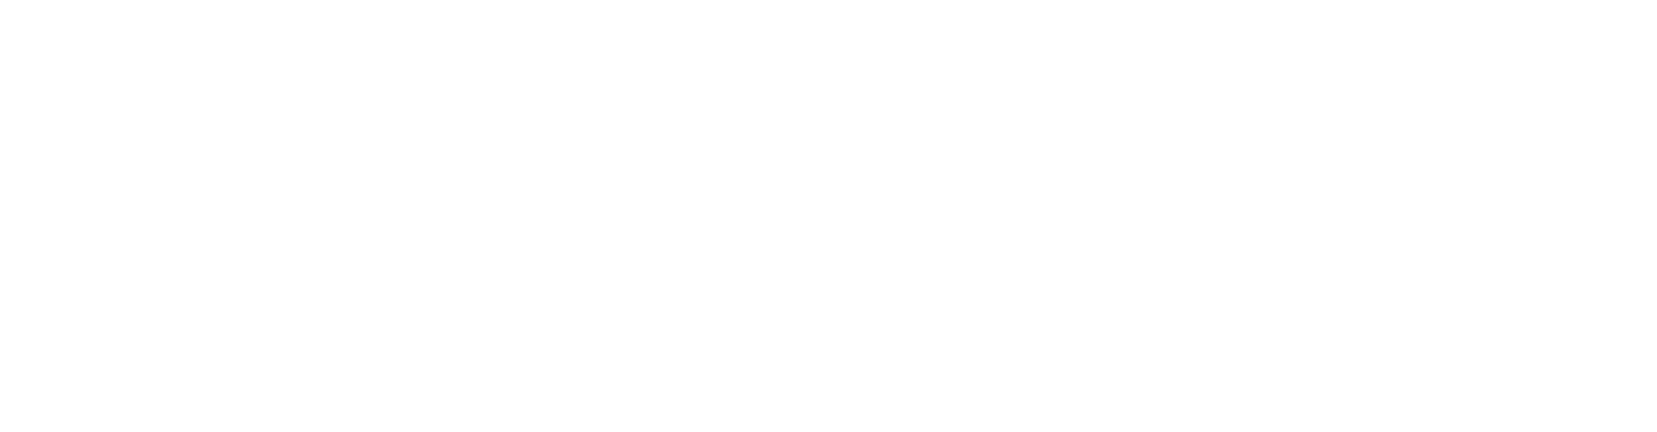 Norfolk Southern logo large for dark backgrounds (transparent PNG)